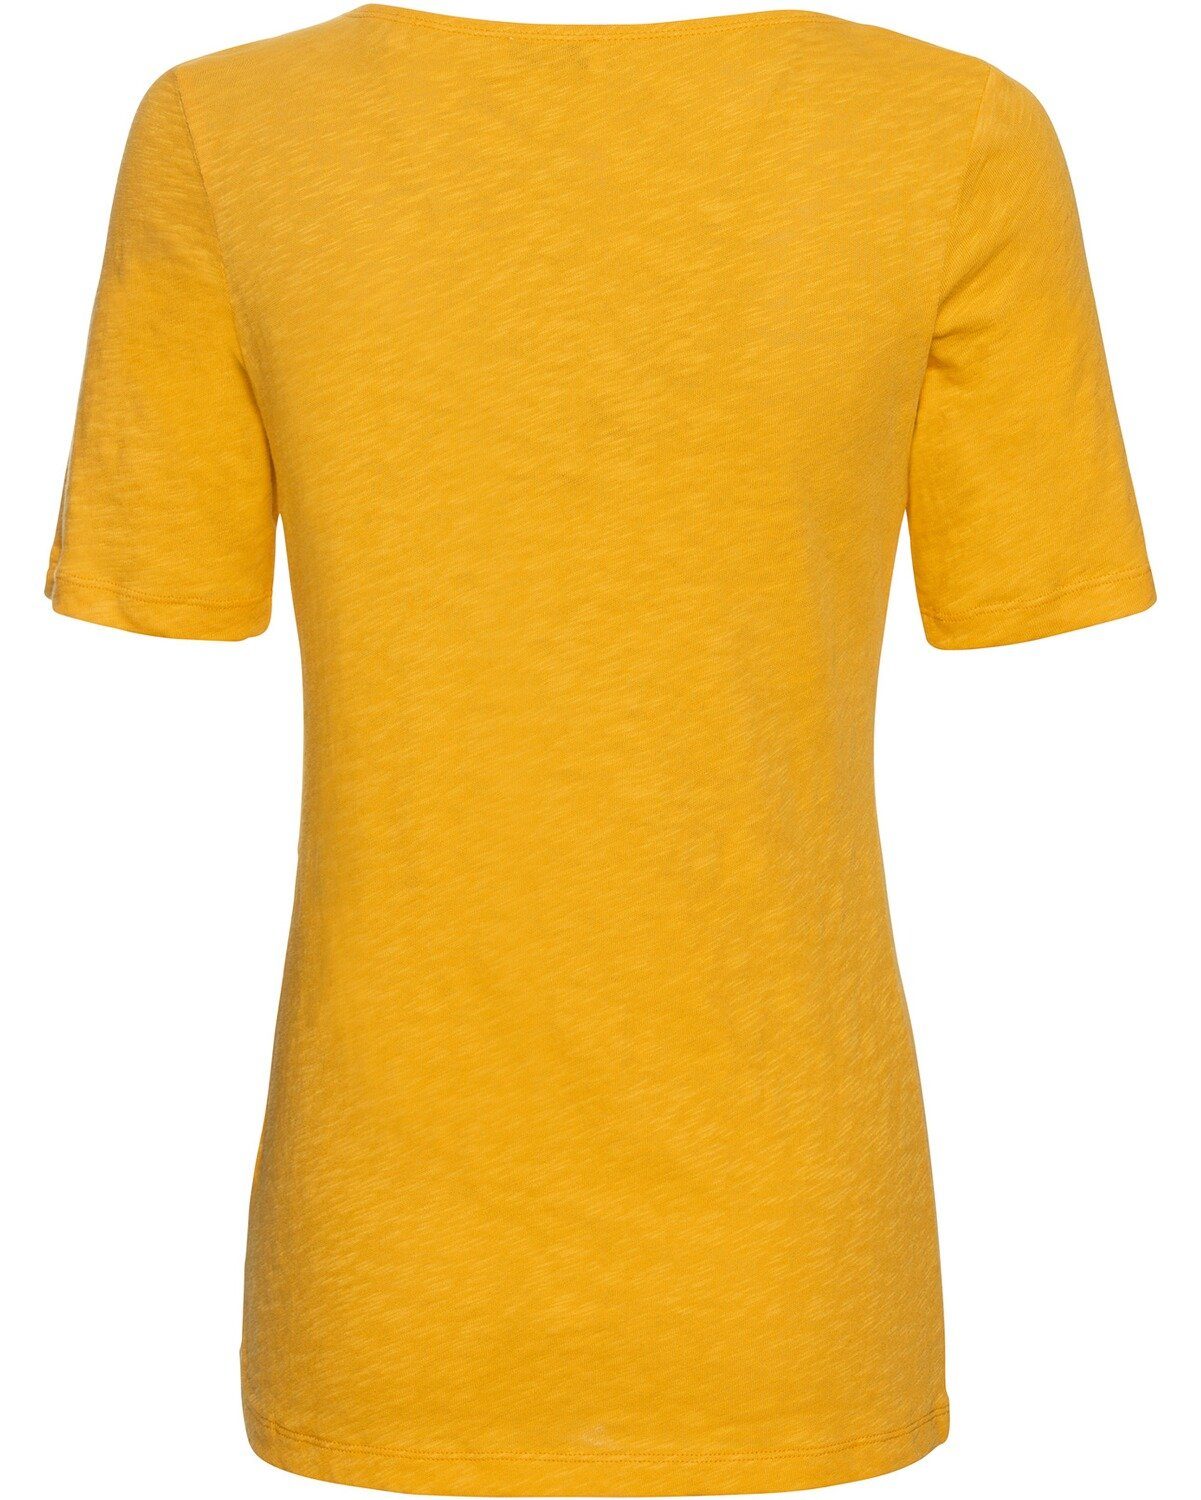 Halbarm-Shirt Marc T-Shirt Gelb O'Polo